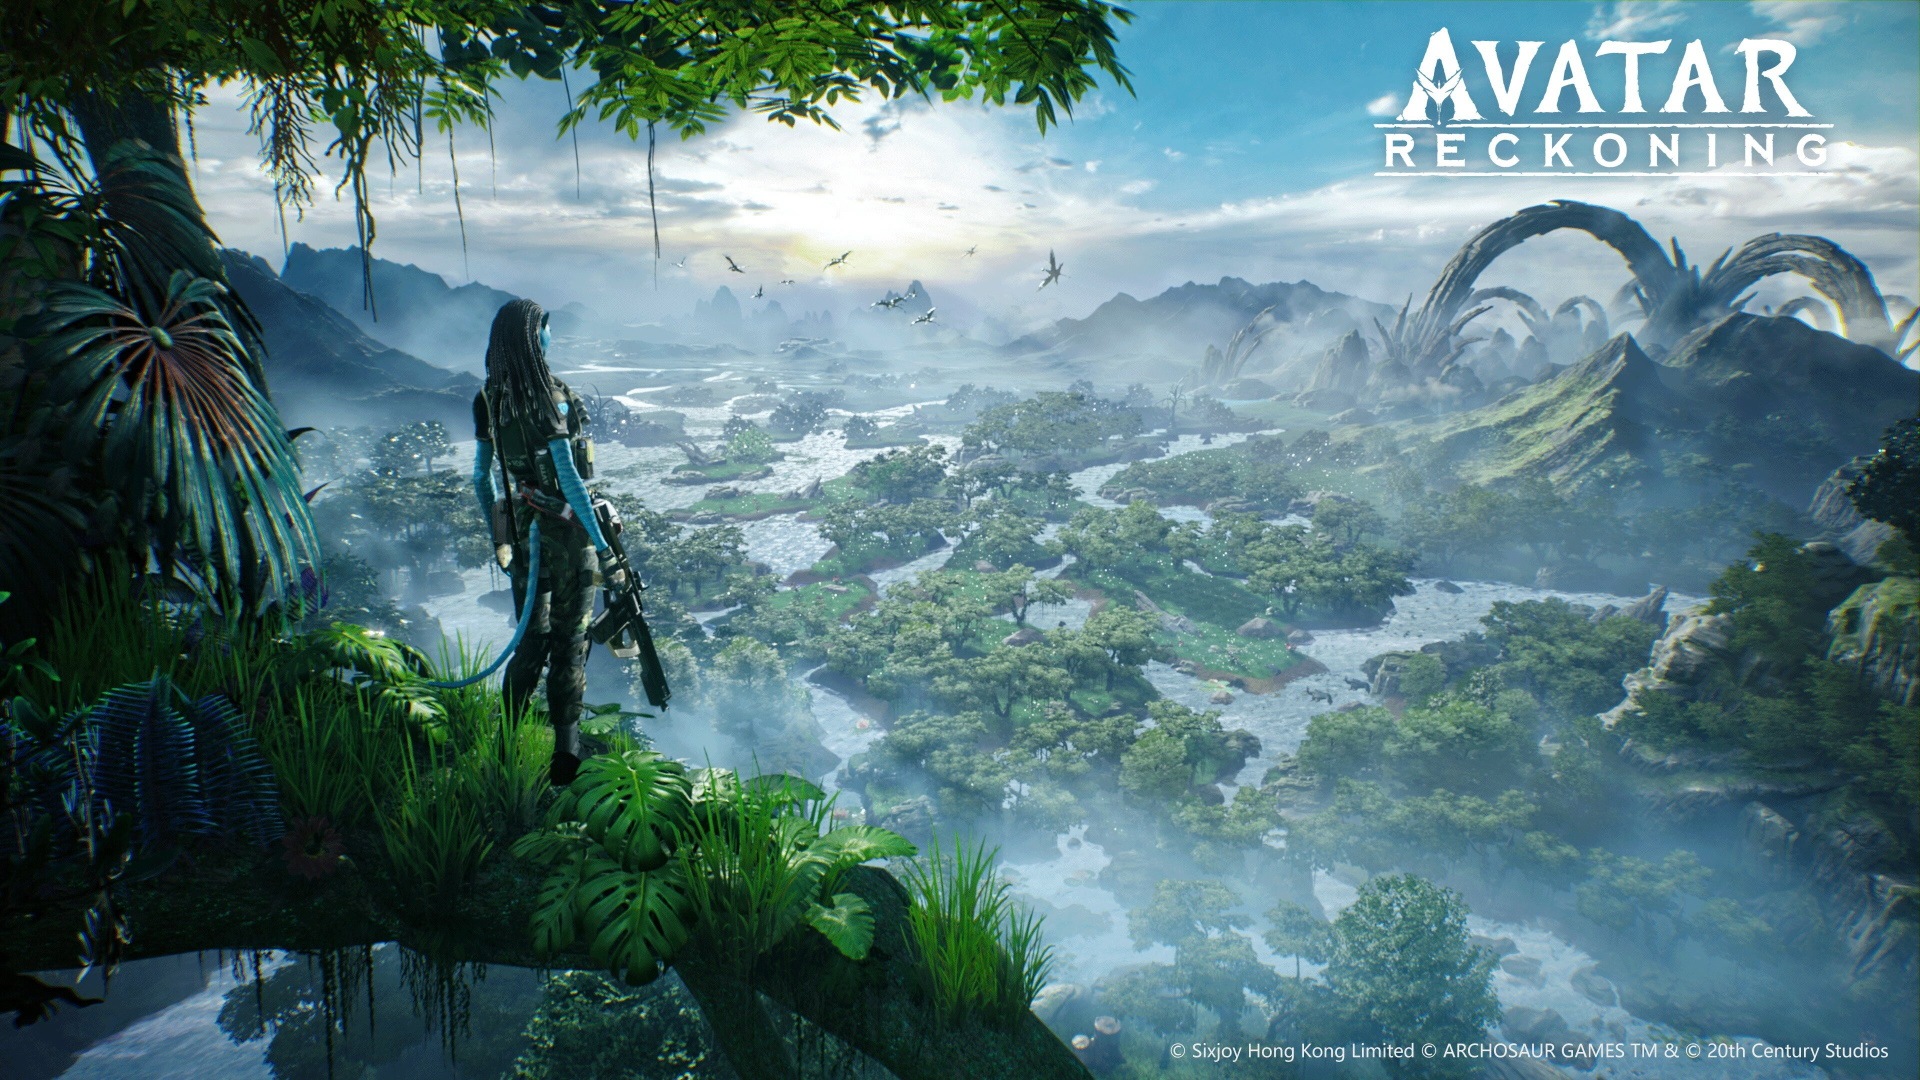 Avatar: Reckoning New Trailer Previews Worldview and Fast-Paced đem đến những cảnh tượng đặc sắc và kịch tính của Avatar video game